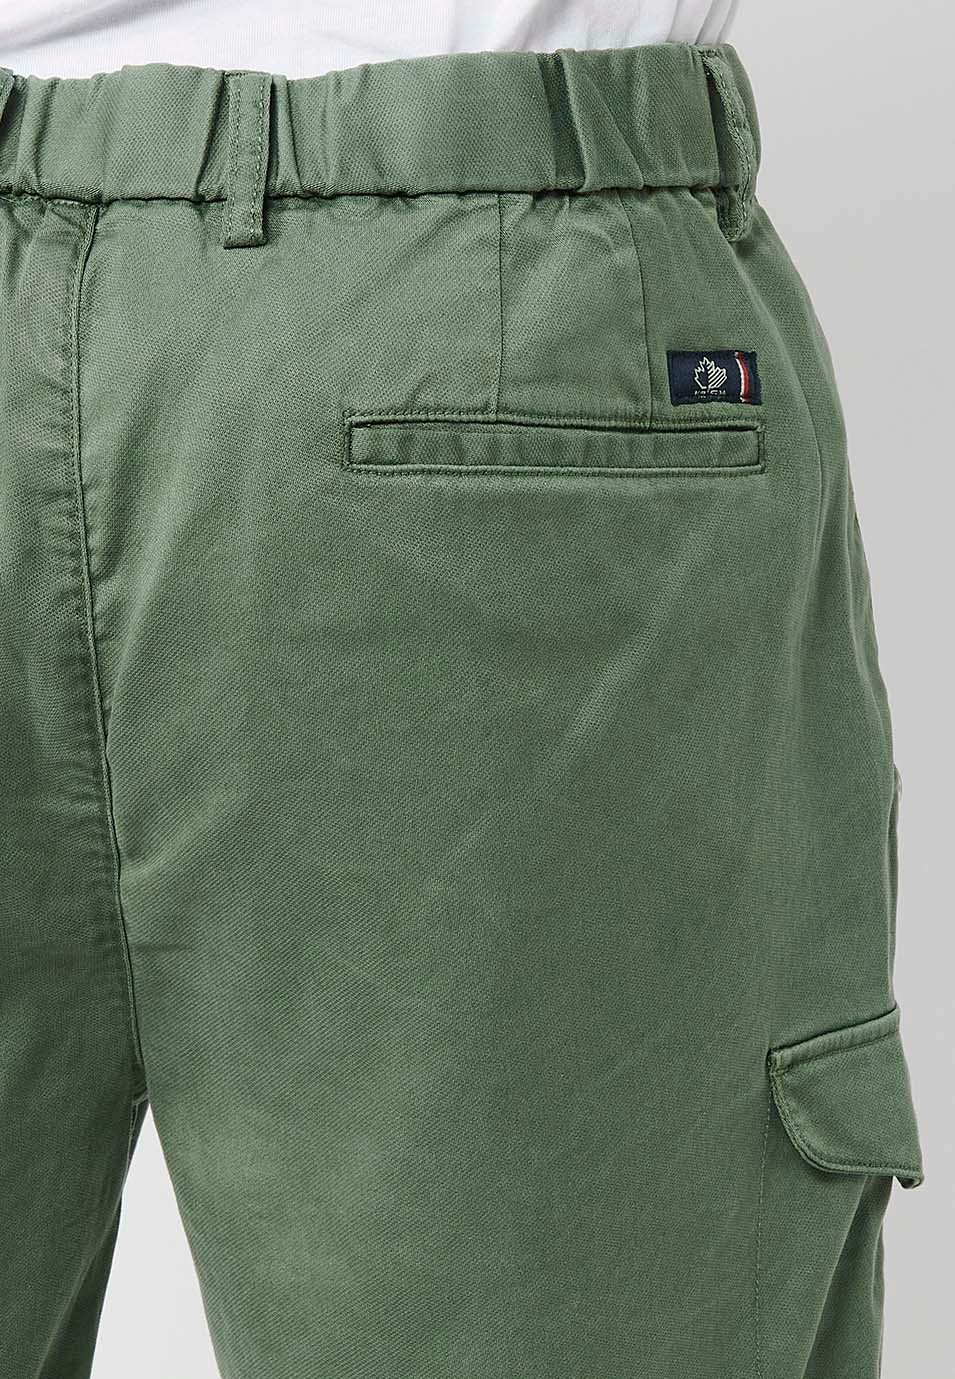 Pantalón corto con Cintura engomada y cierre con cremallera y botón con Bolsillos, dos laterales con solapa de Color Verde para Hombre 7